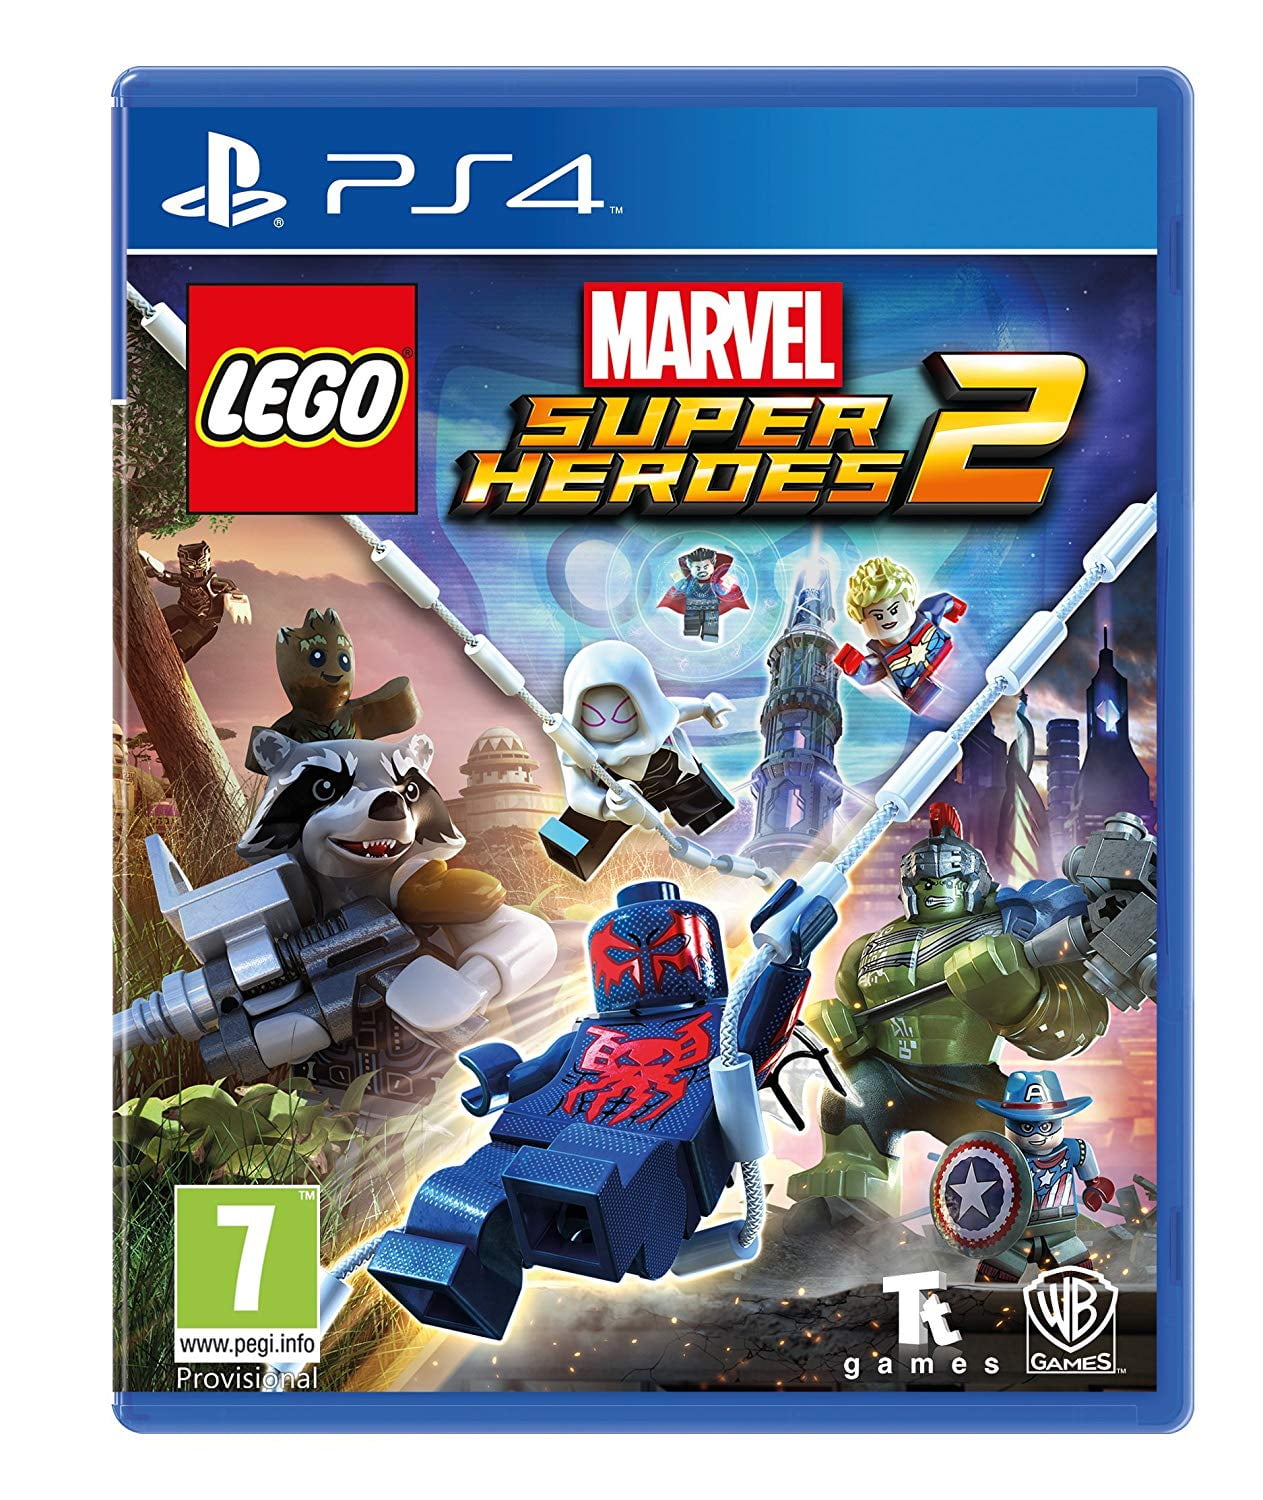 LEGO Marvel Super Heroes 2, Warner Bros, Playstation 4, 883929597802